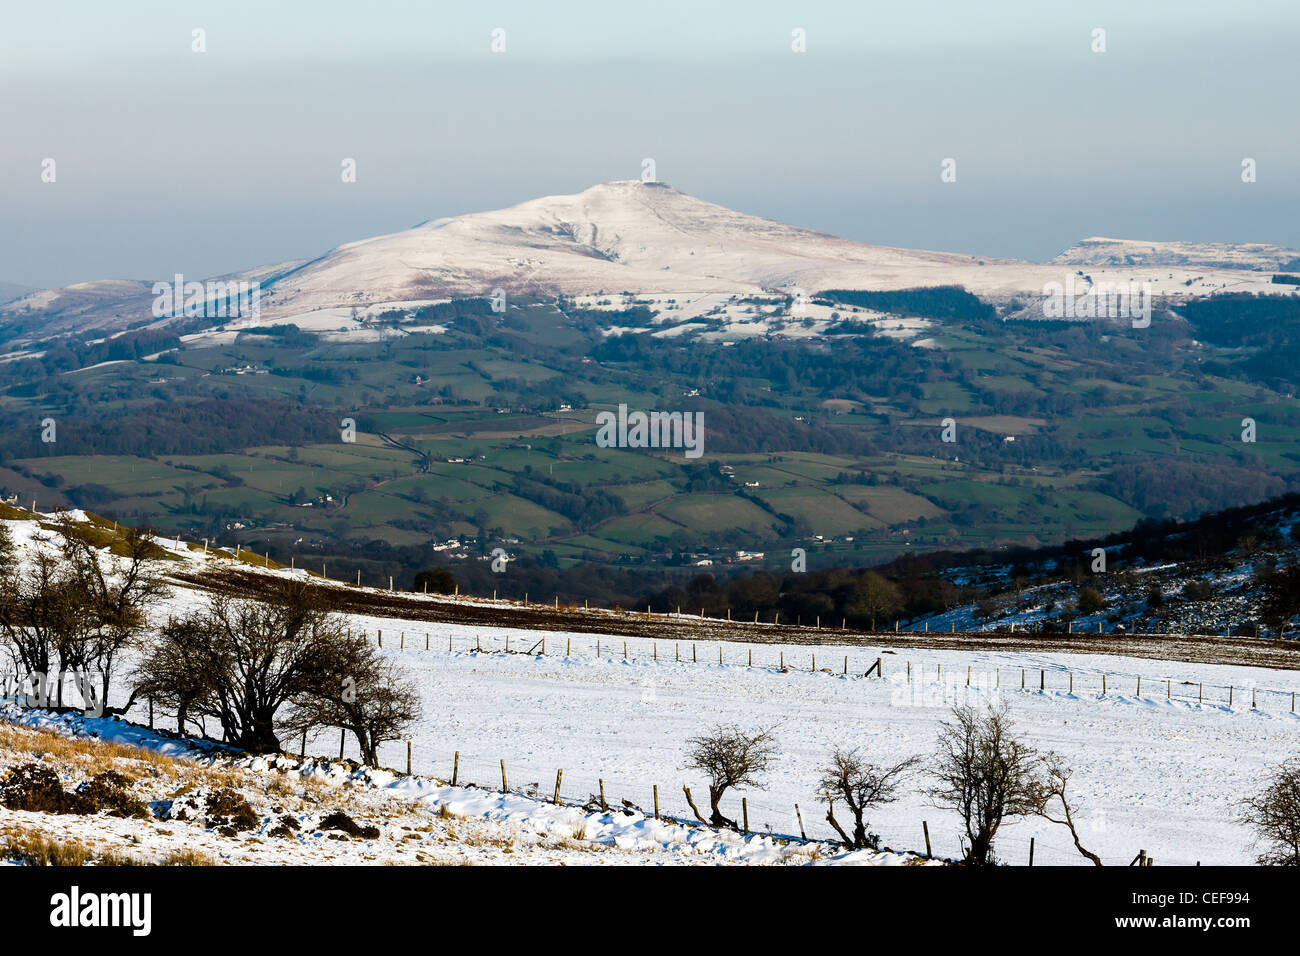 Ein Berg mit seinem Gipfel mit Schnee mit grünen Feldern unten eine klare Schneegrenze mit abfallenden Schnee bedeckten Feldern Vordergrund bedeckt Stockfoto